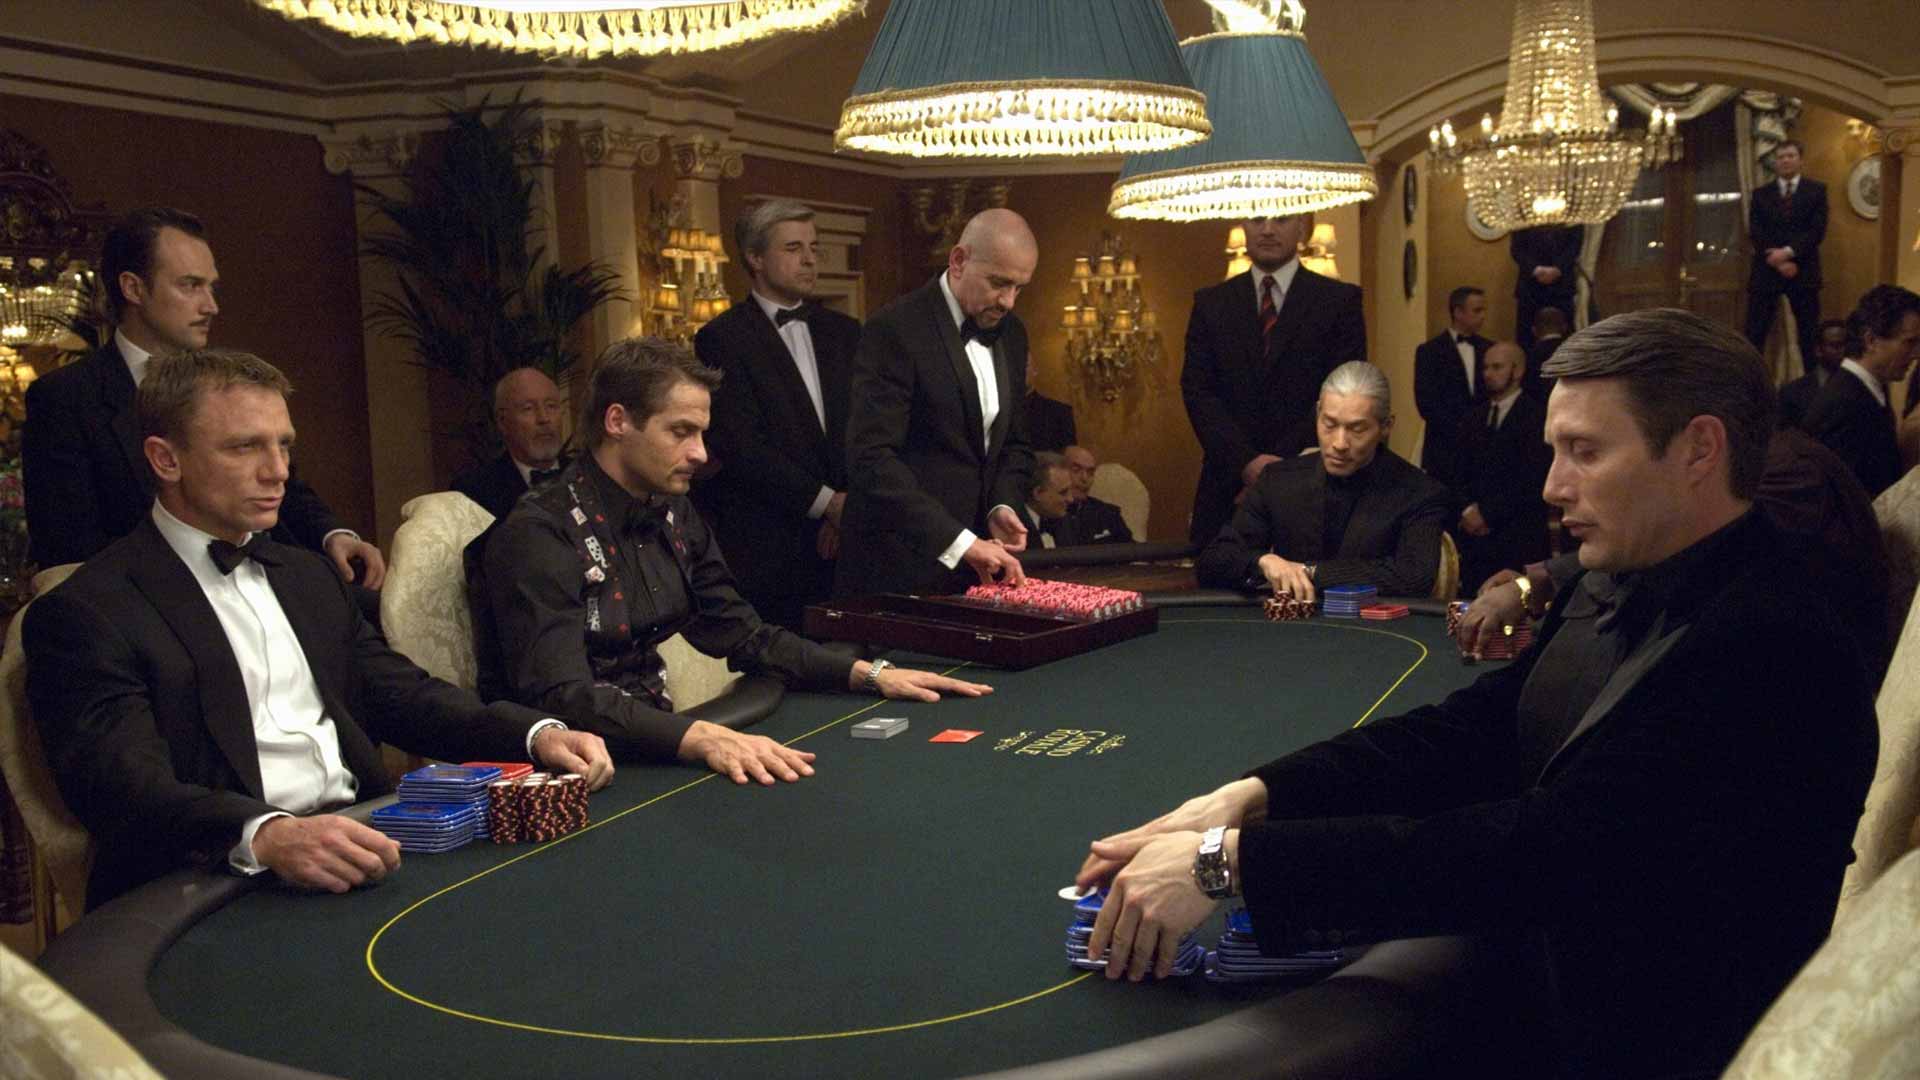 Martin Campbell berbicara tentang adegan poker Casino Royale